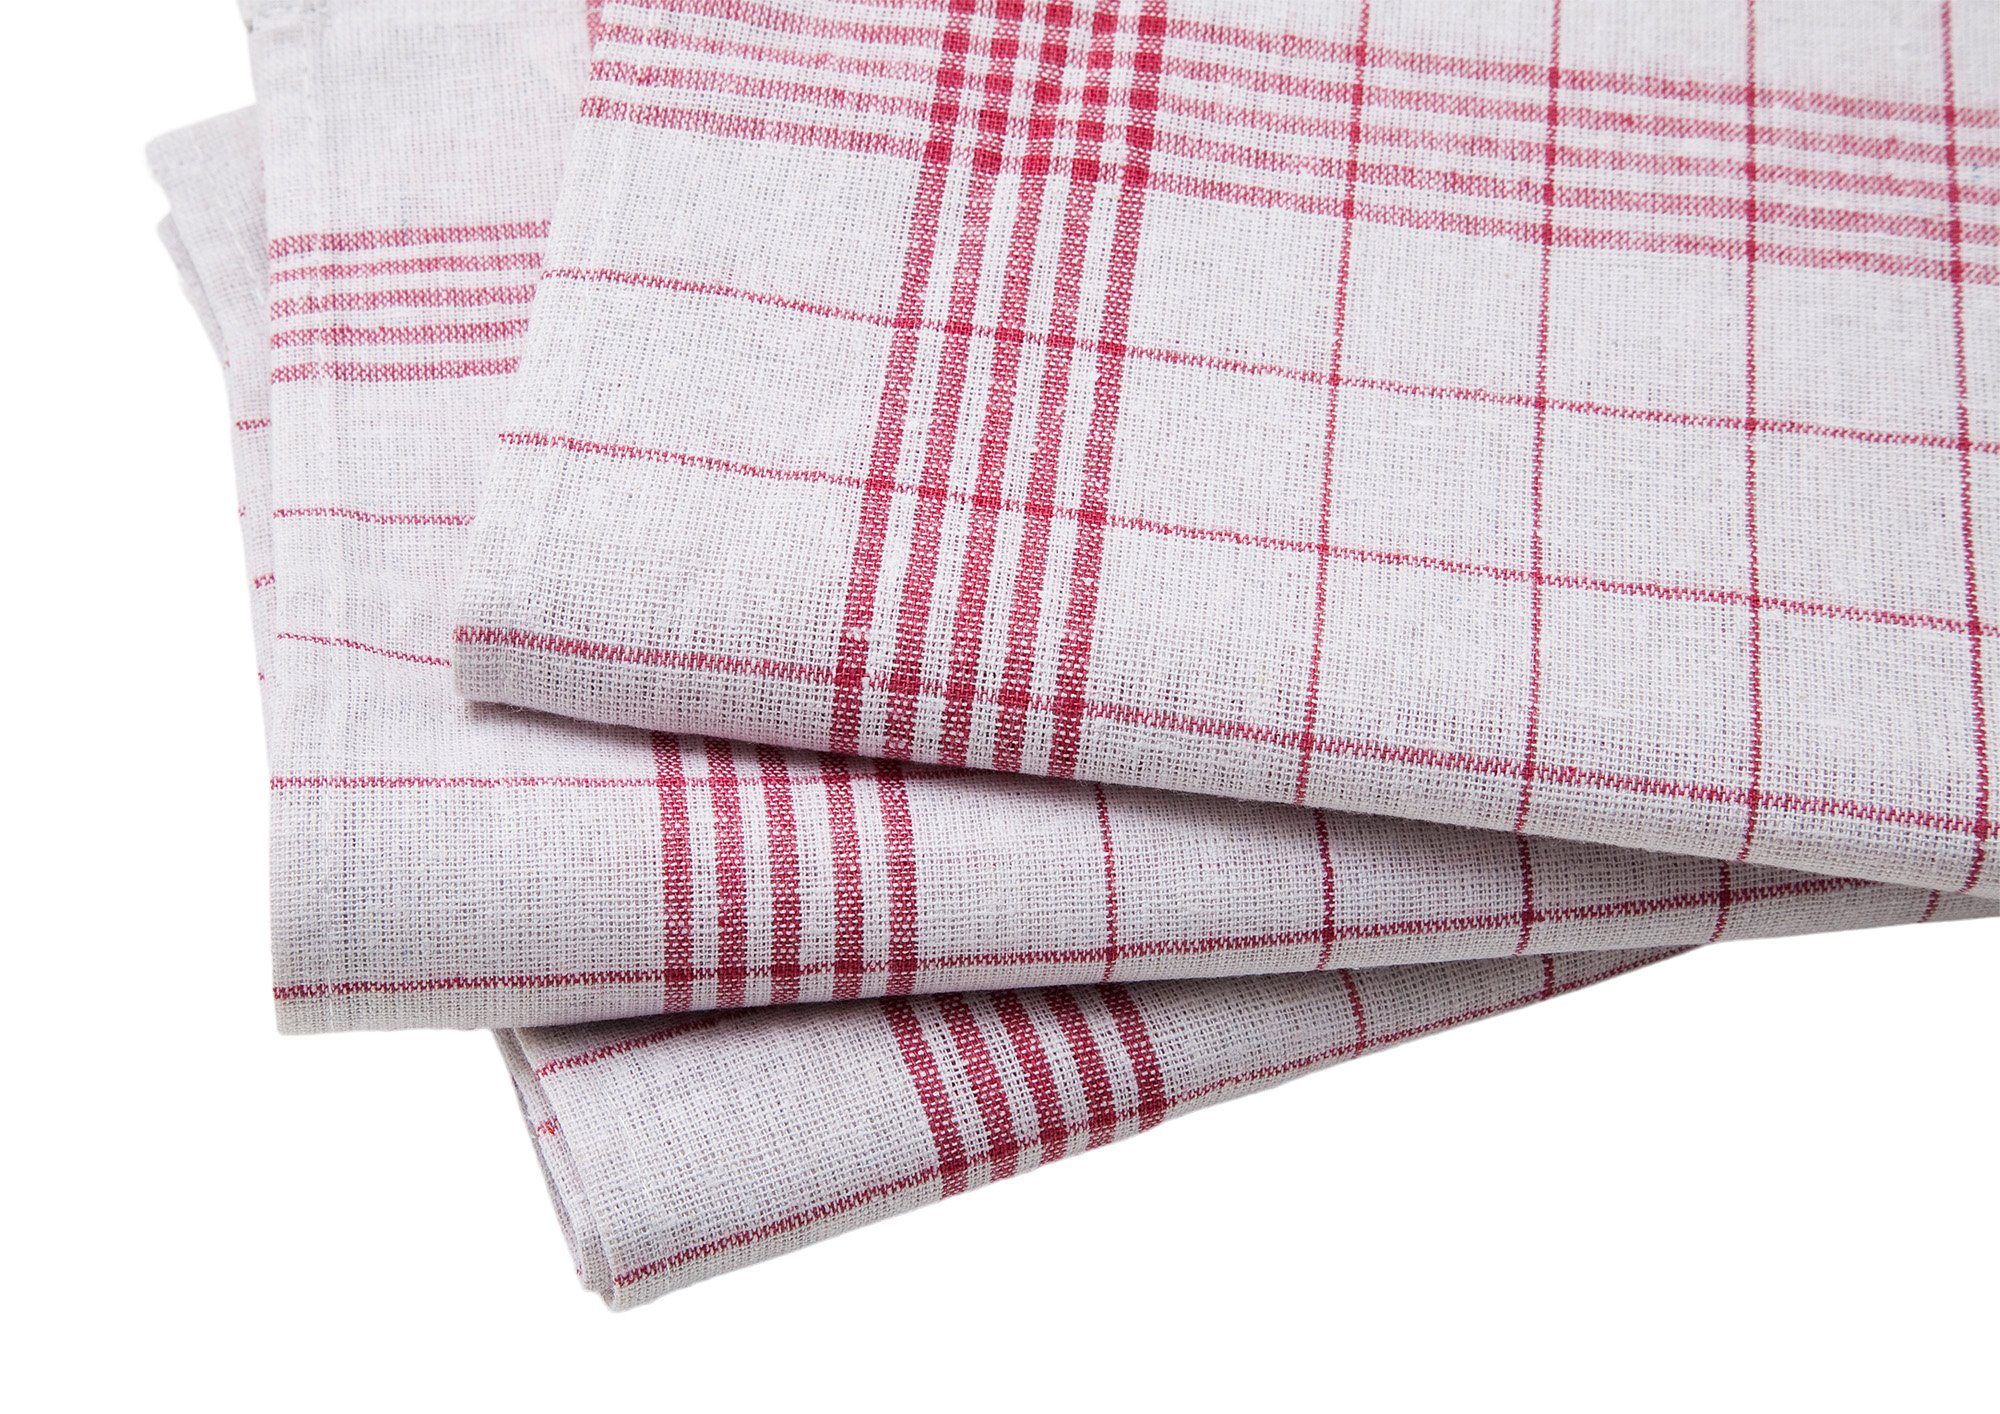 Allzweck-Tücher Rot-Weiß 10er 100% Geschirrtuch 50x70 Premium Premium-Qualität Textiles Set Baumwolle, cm Vielfältig Trockentuch, - aus einsetzbares Hometex kariert